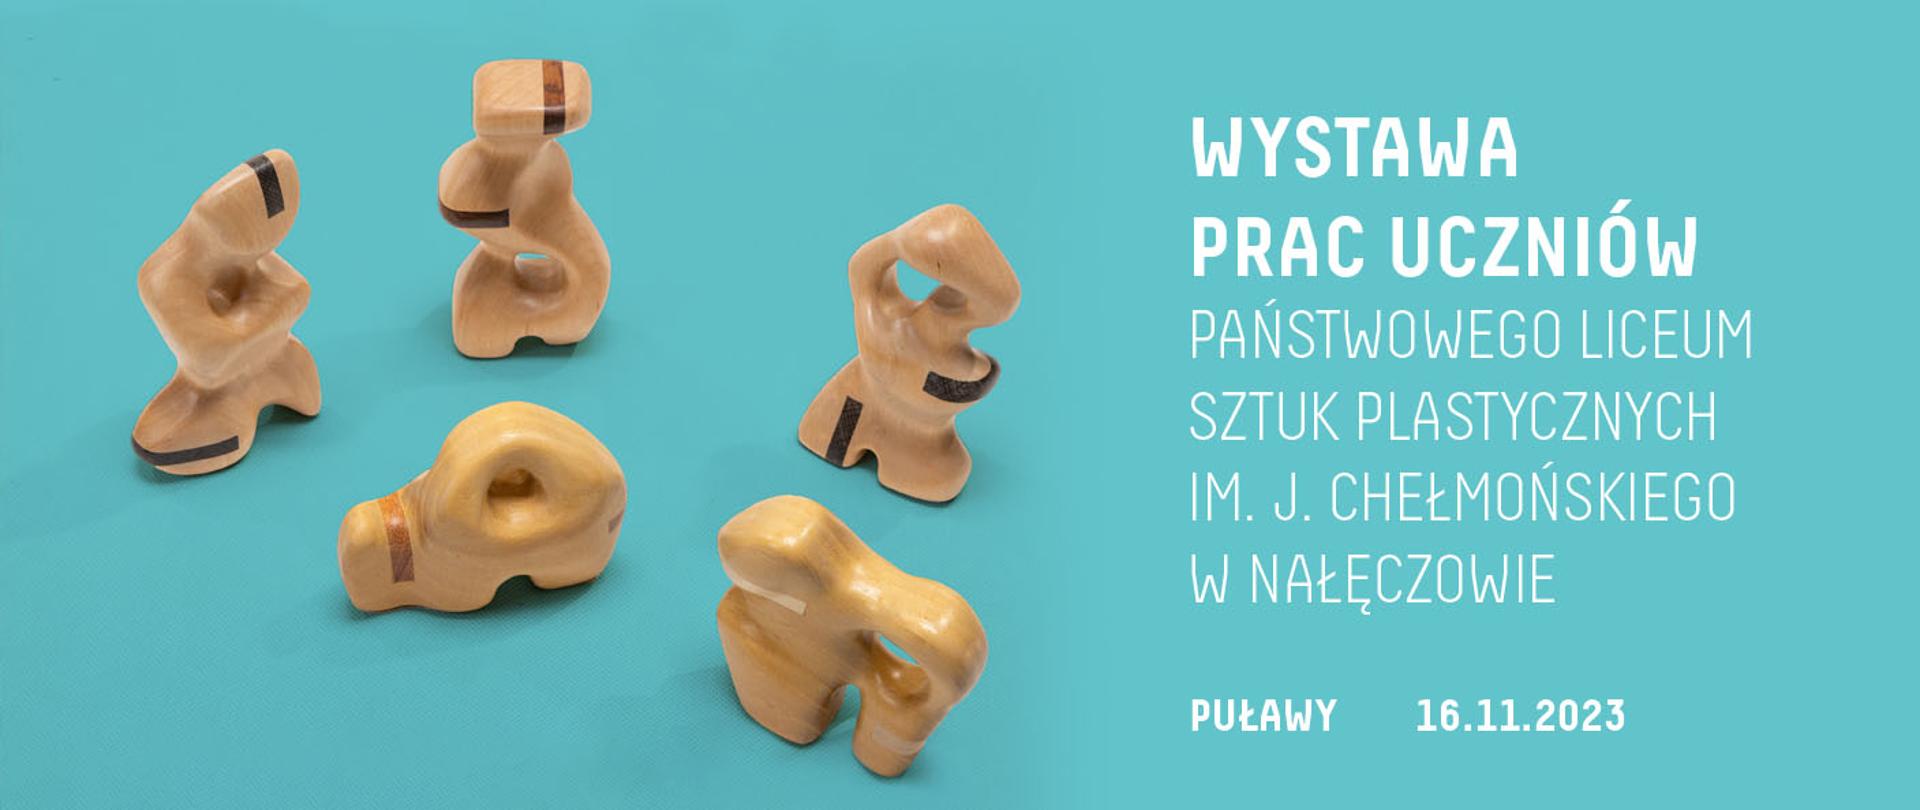 Grafika przedstawiająca zabawki z drewna oraz informacje na temat wystawy prac uczniów PLSP w Domu Chemika w Puławach